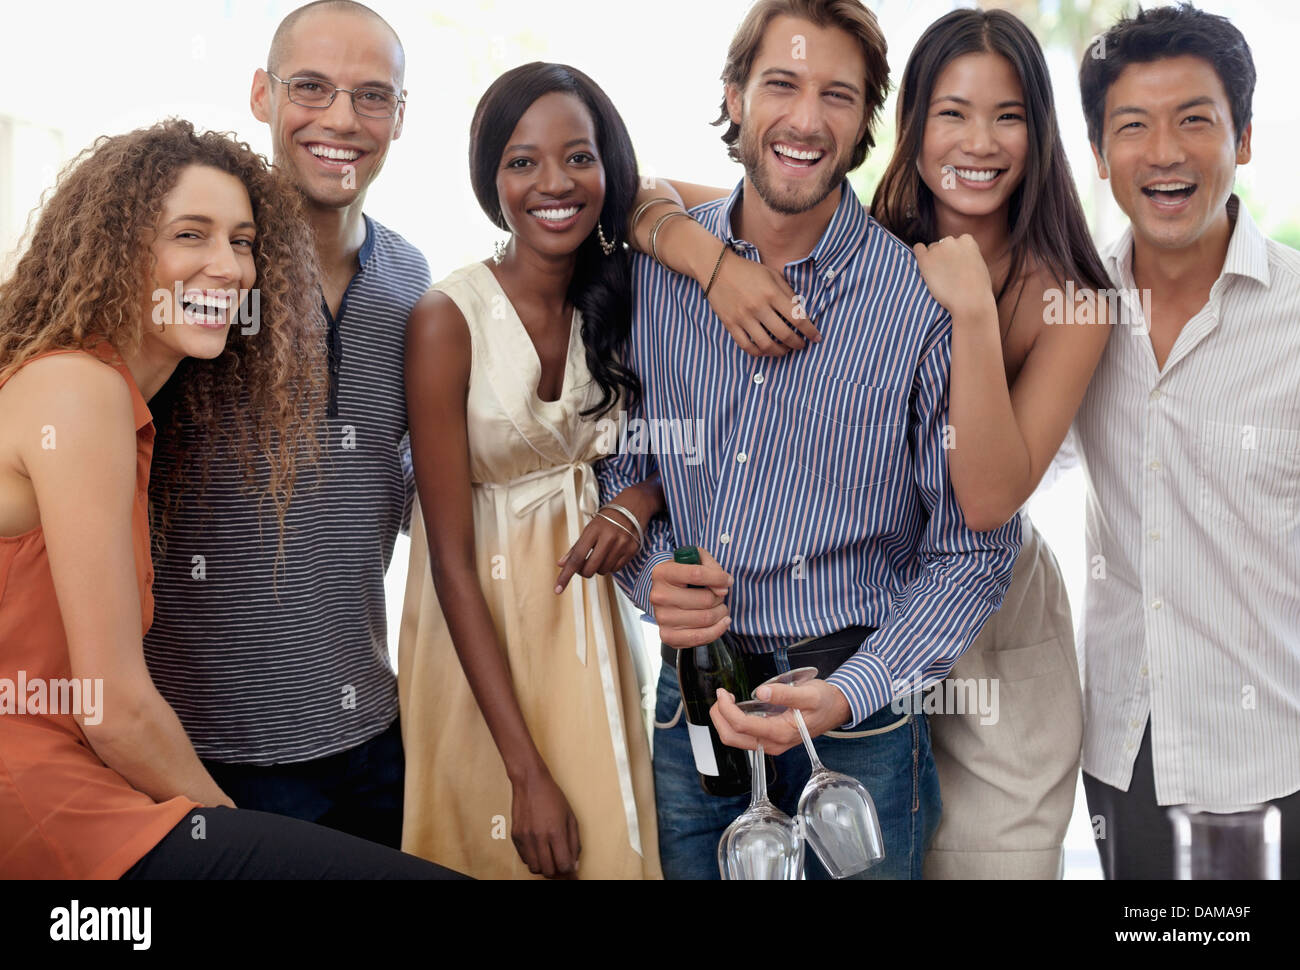 Freunde lächelnd zusammen auf party Stockfoto